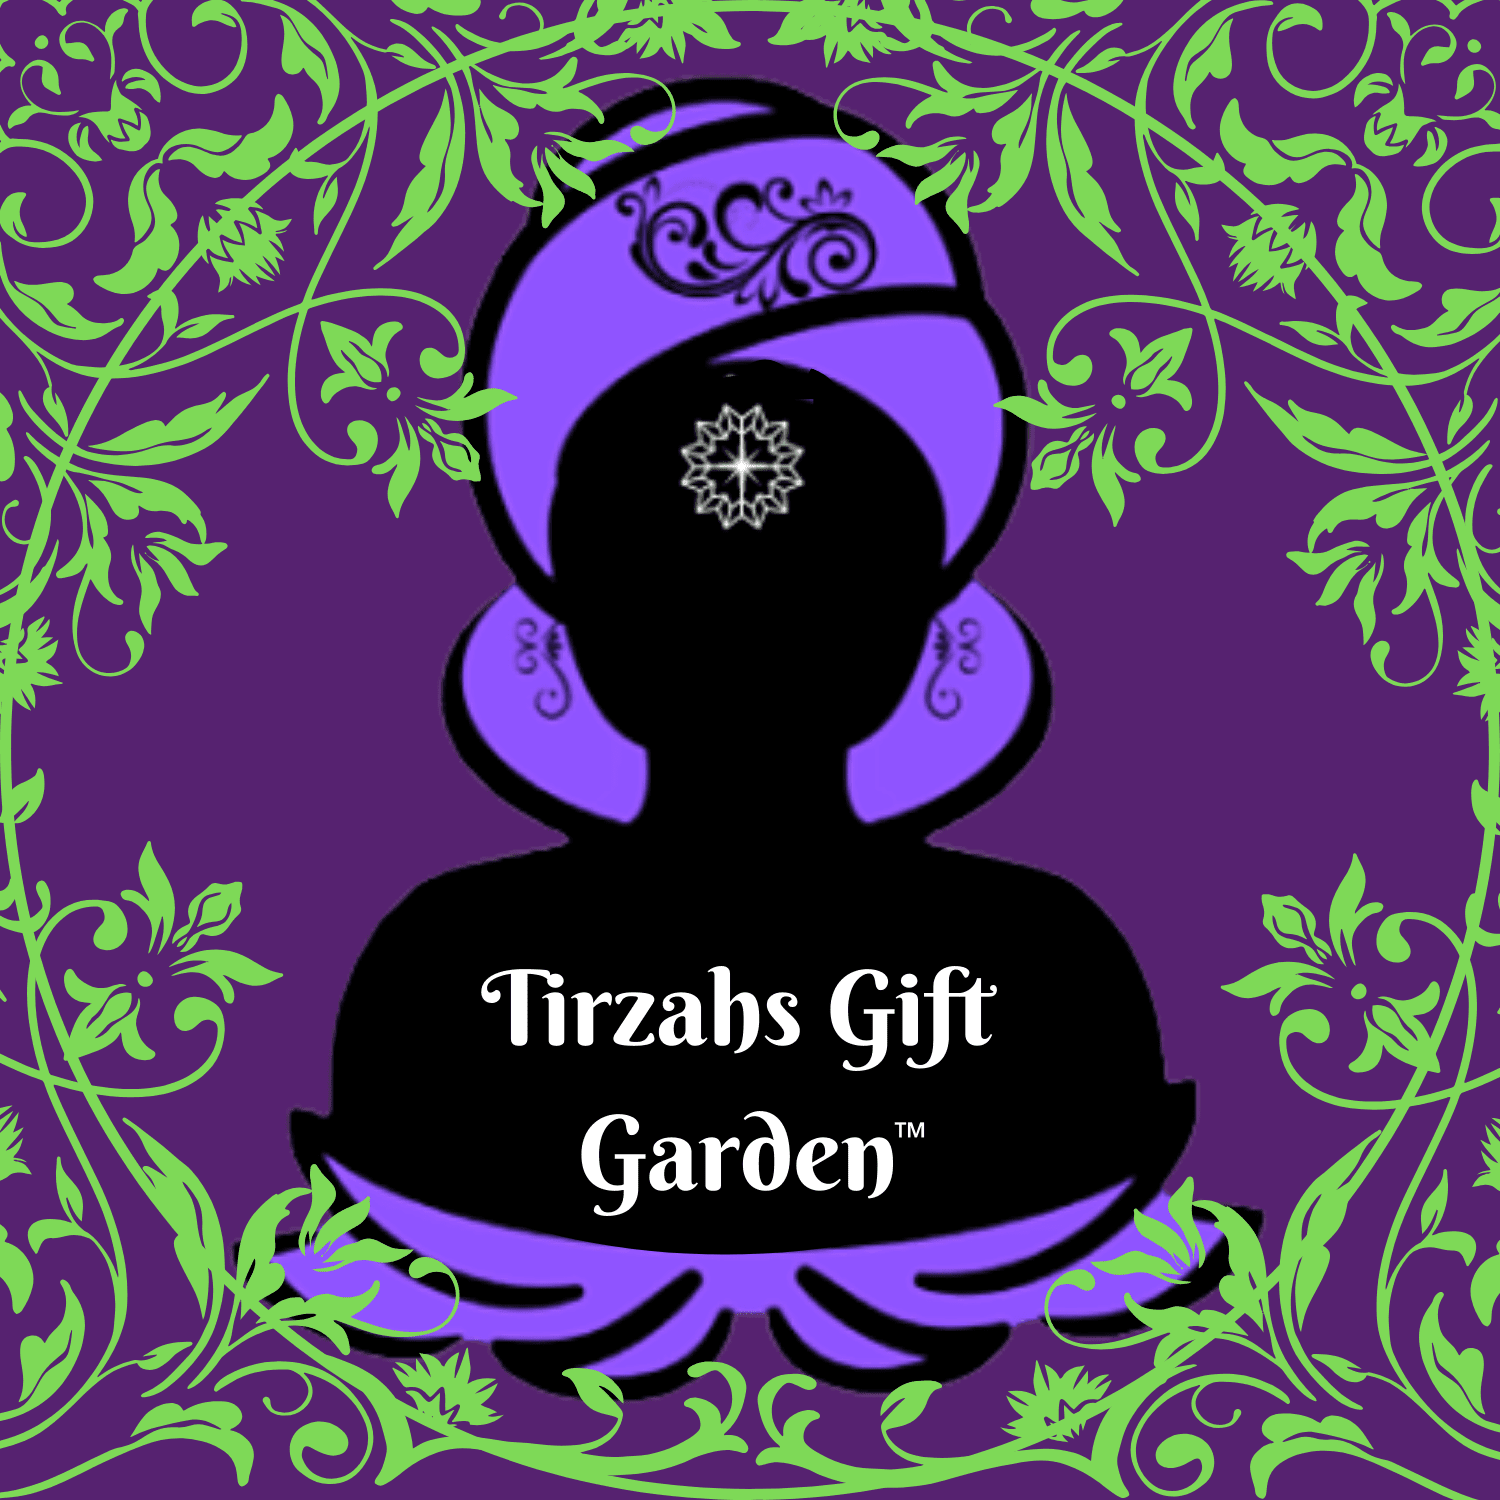 Tirzahs Gift Garden™